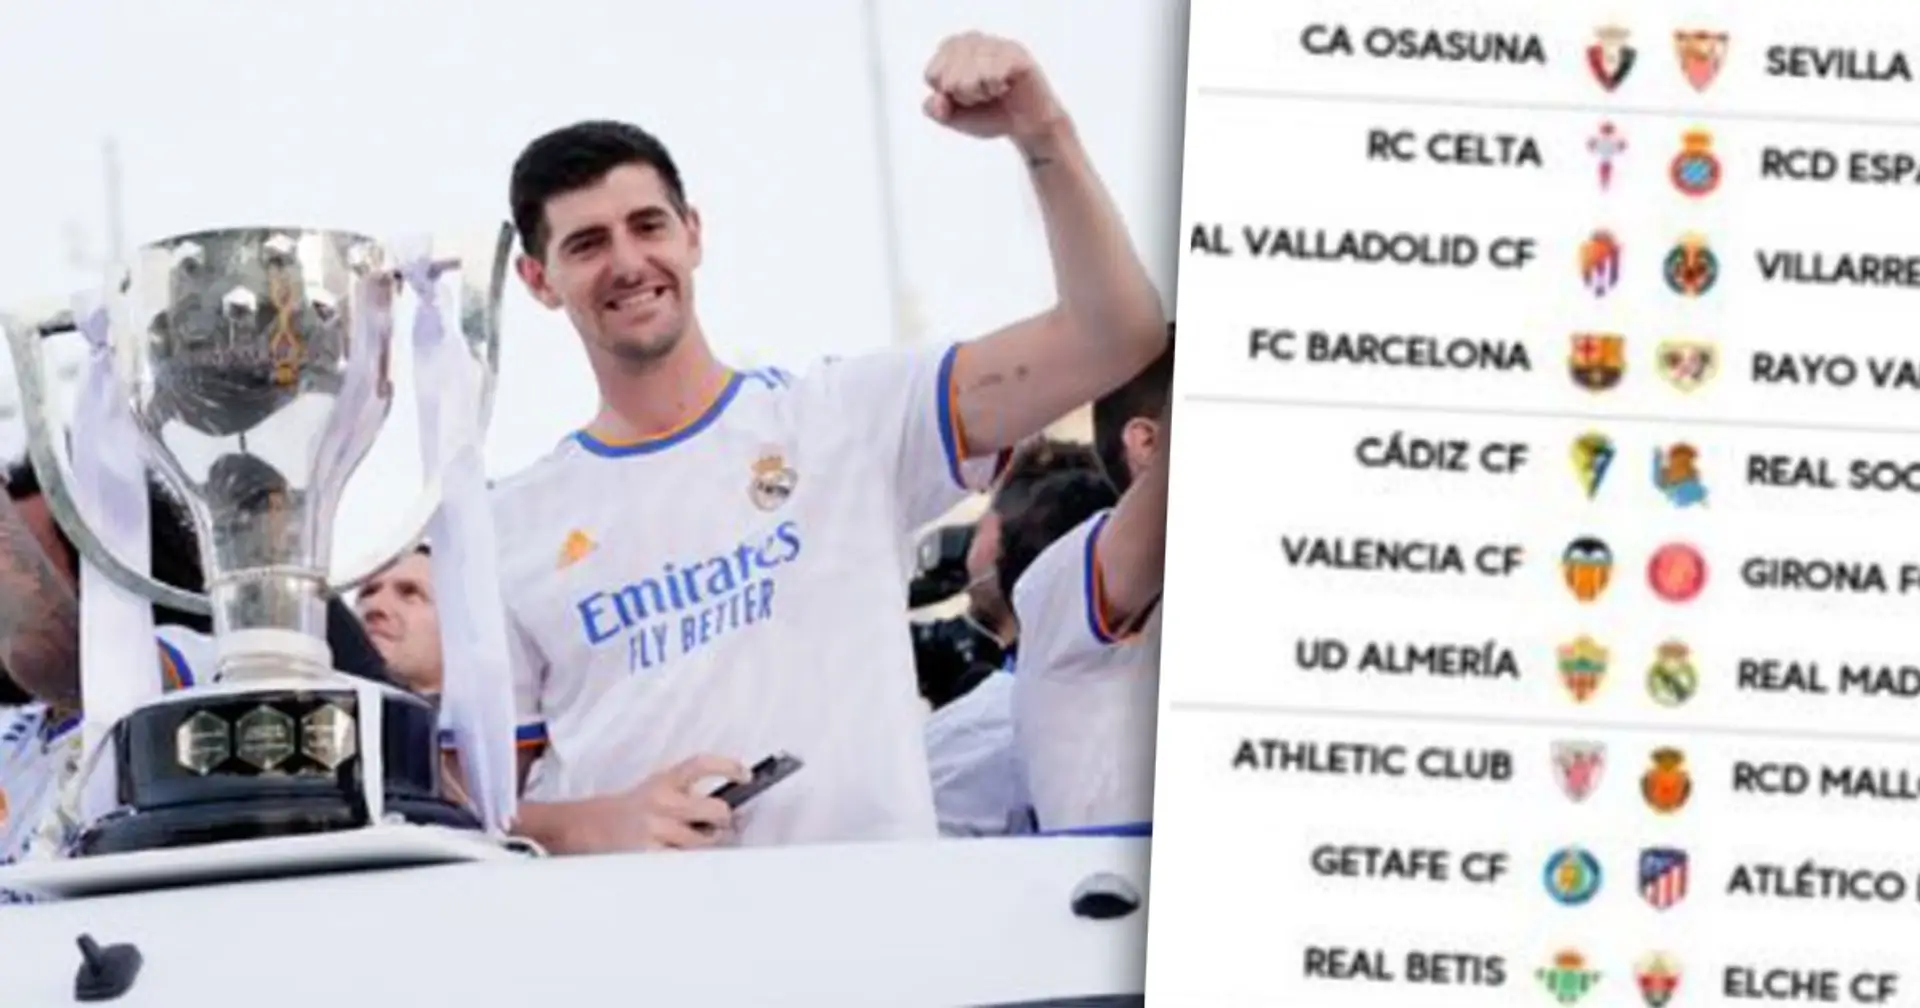 Officiel : Confirmation de la date et de l'heure des 3 premiers matchs du Real Madrid en Liga